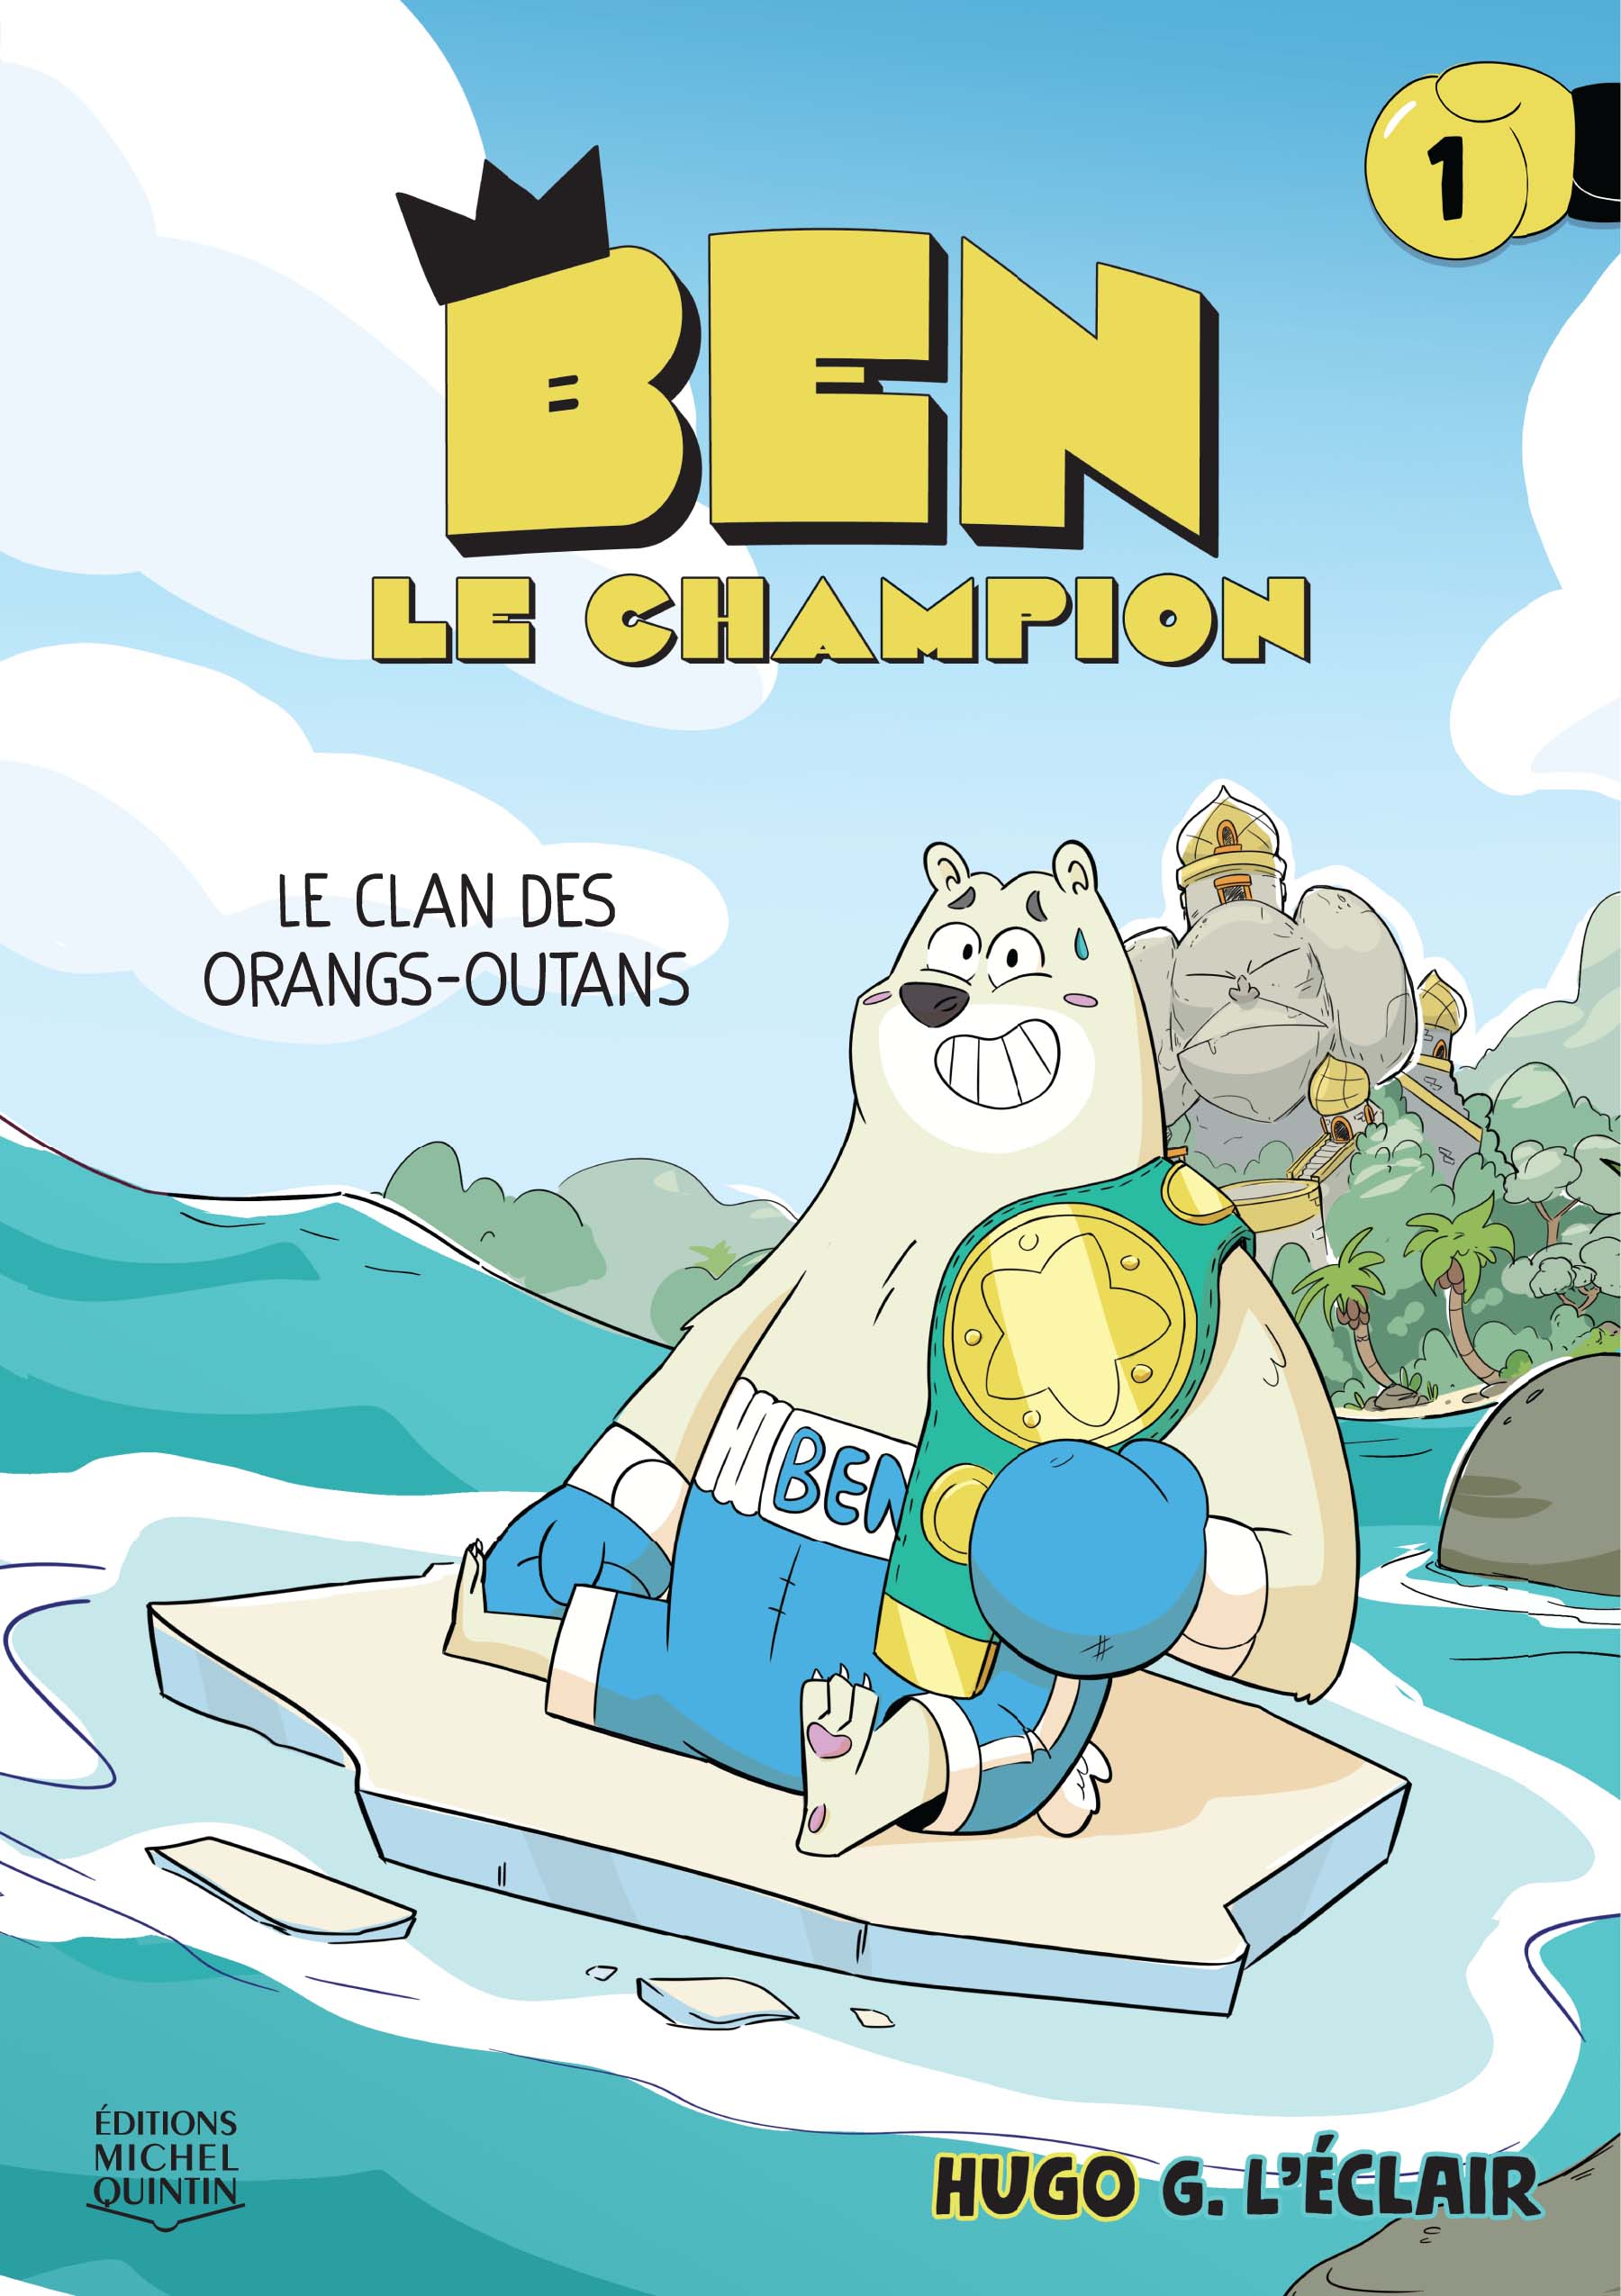 Ben le champion 1 – Le clan des orangs-outans: une nouvelle série de bande dessinée humoristique remplie d’arts martiaux, de robots géants et de combats enlevants!